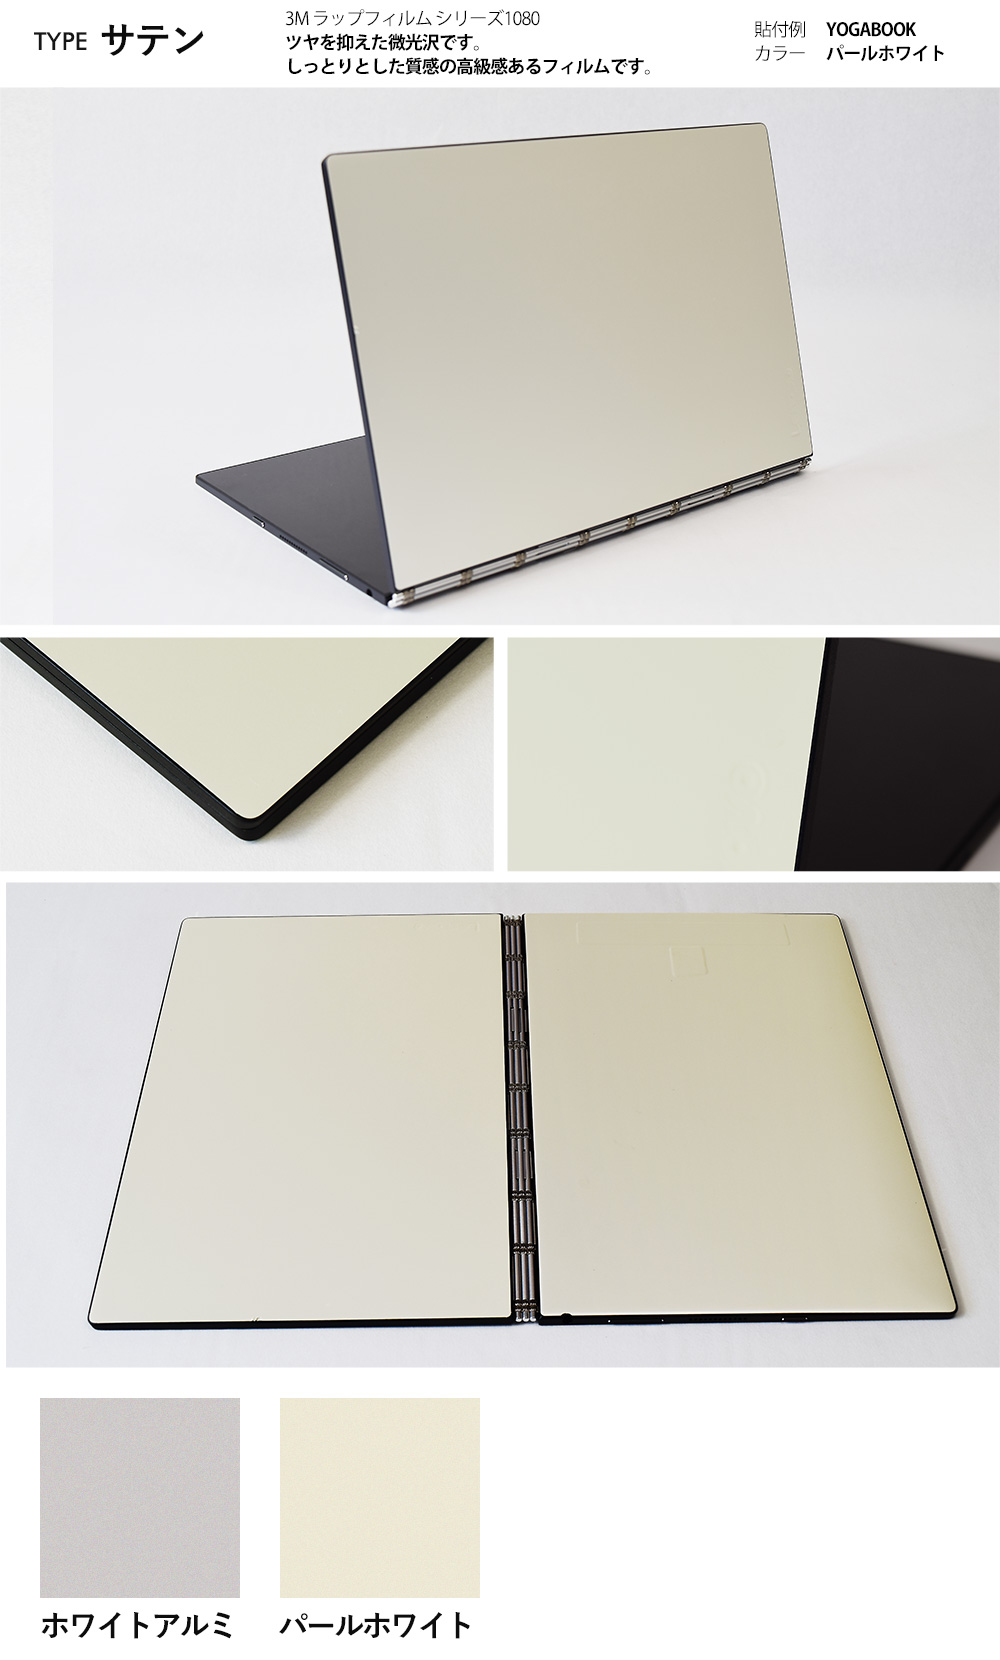 スキンシール ThinkPad X13 Gen 3 